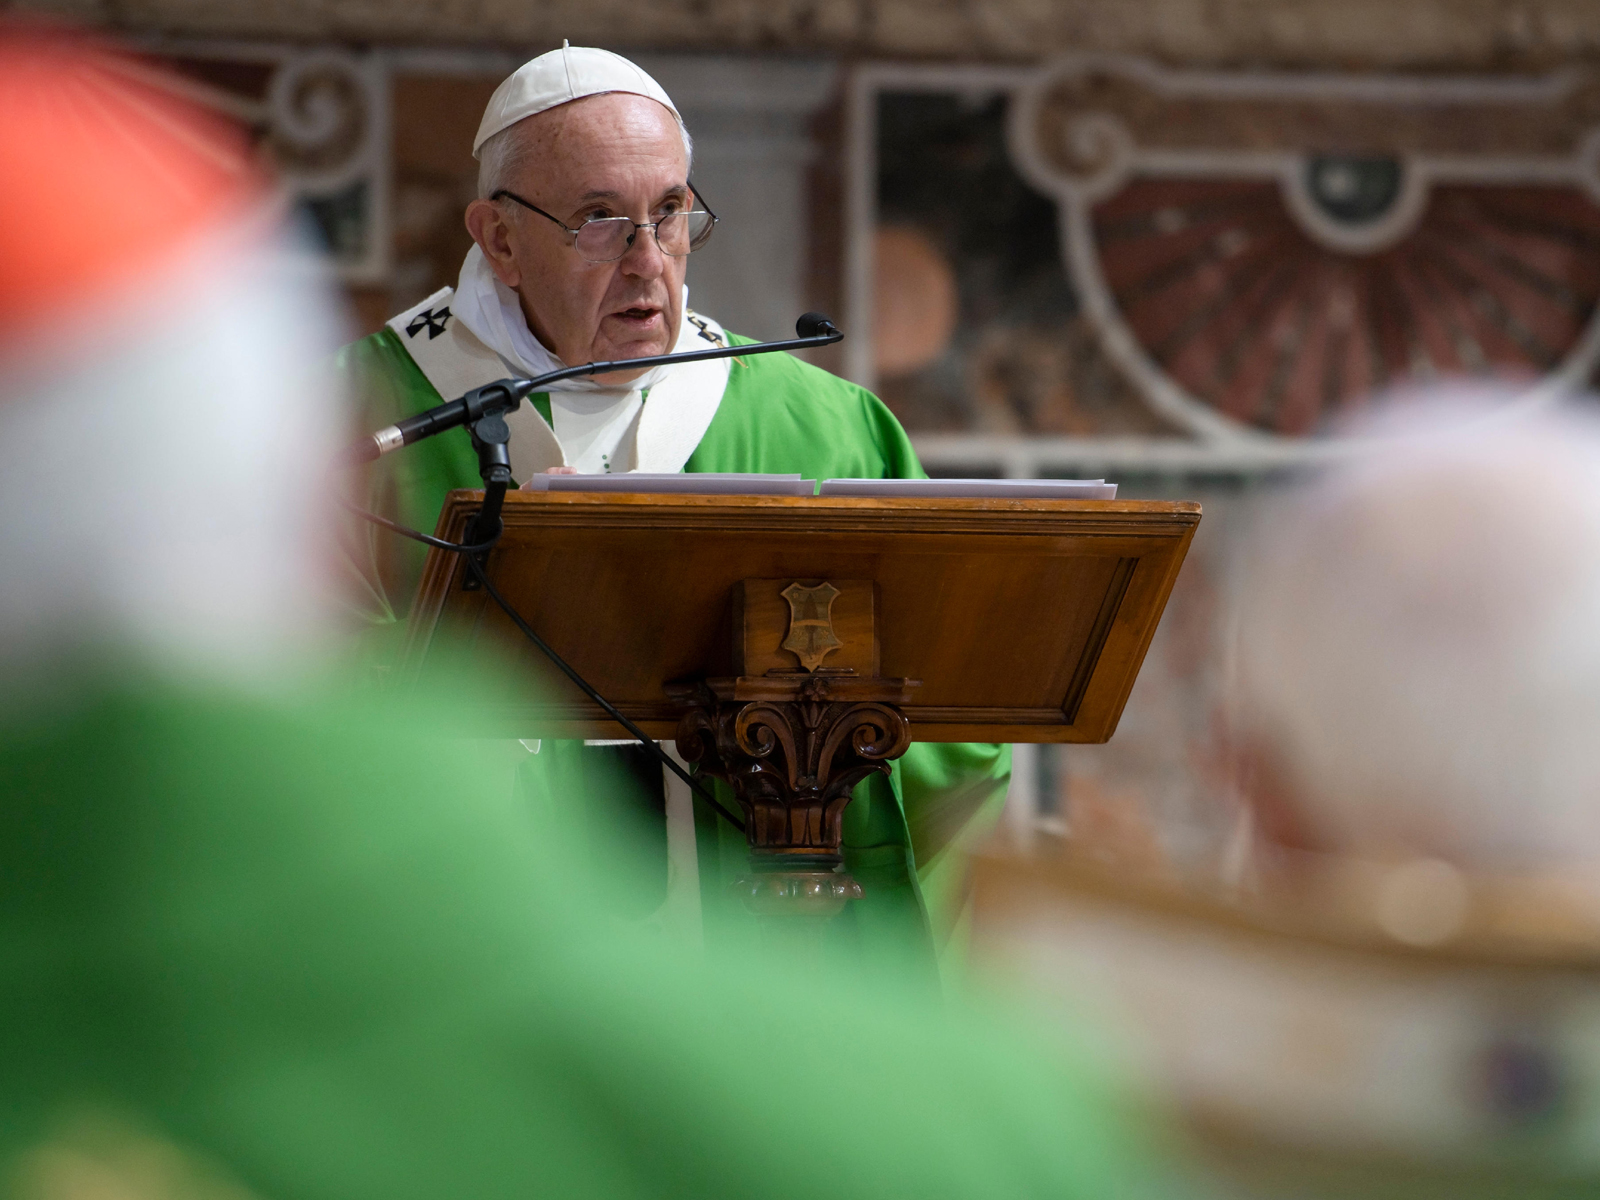 “Chegou a hora” de erradicar os abusos sexuais, diz Papa Francisco